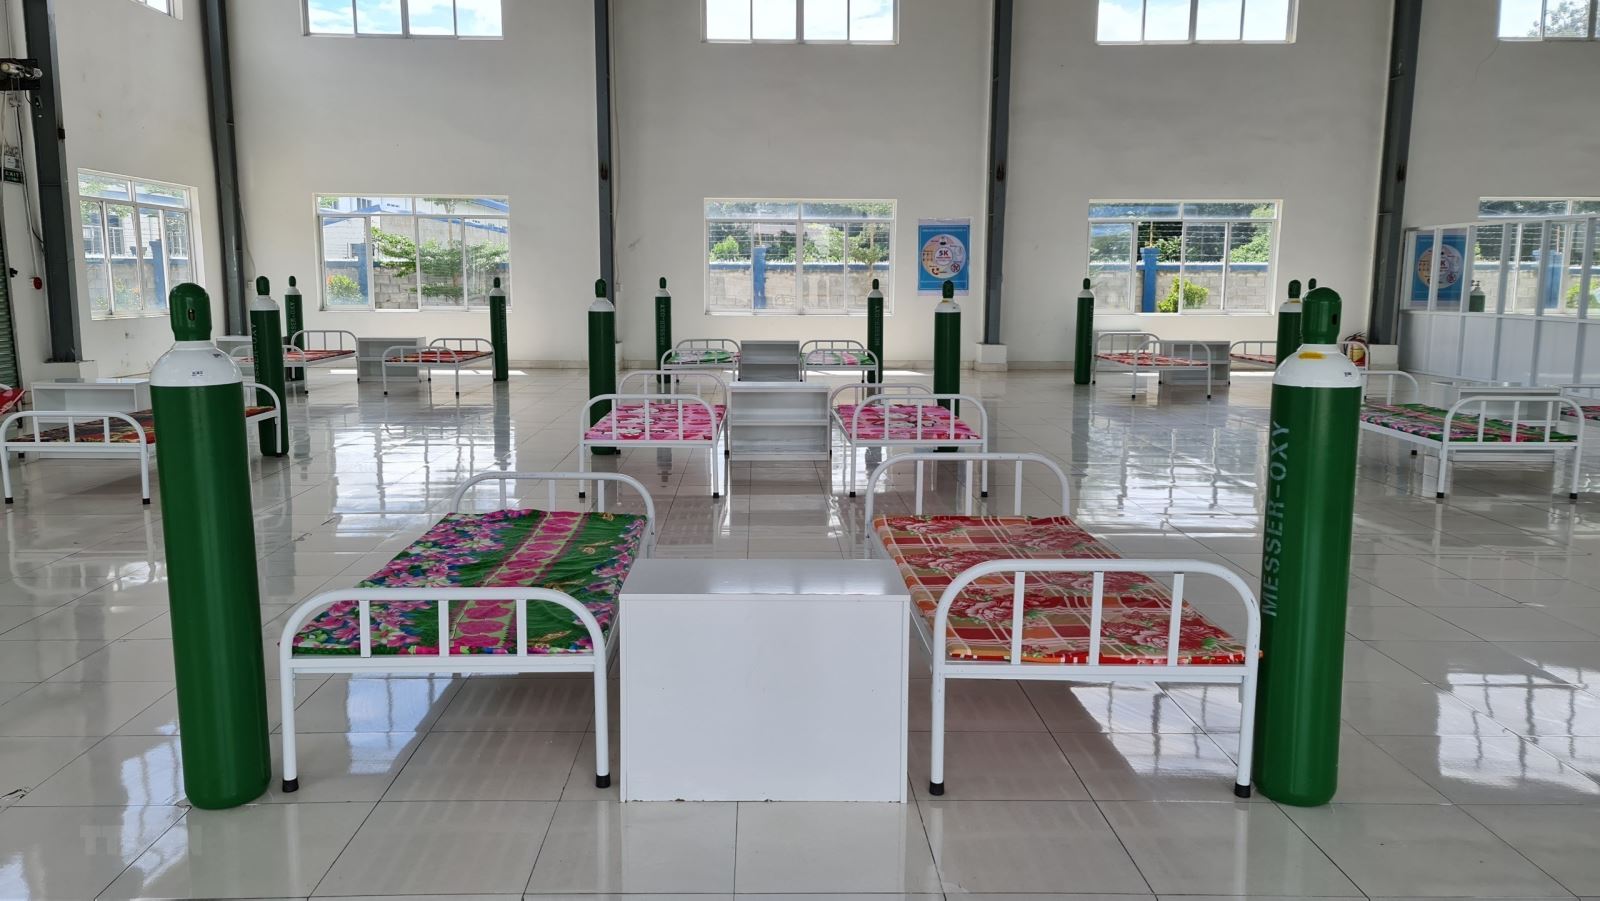 Trạm Y tế lưu động số 2 tại Cụm công nghiệp Phú Chánh, thị xã Tân Uyên, tỉnh Bình Dương để hỗ trợ thu dung, điều trị Covid-19-19.